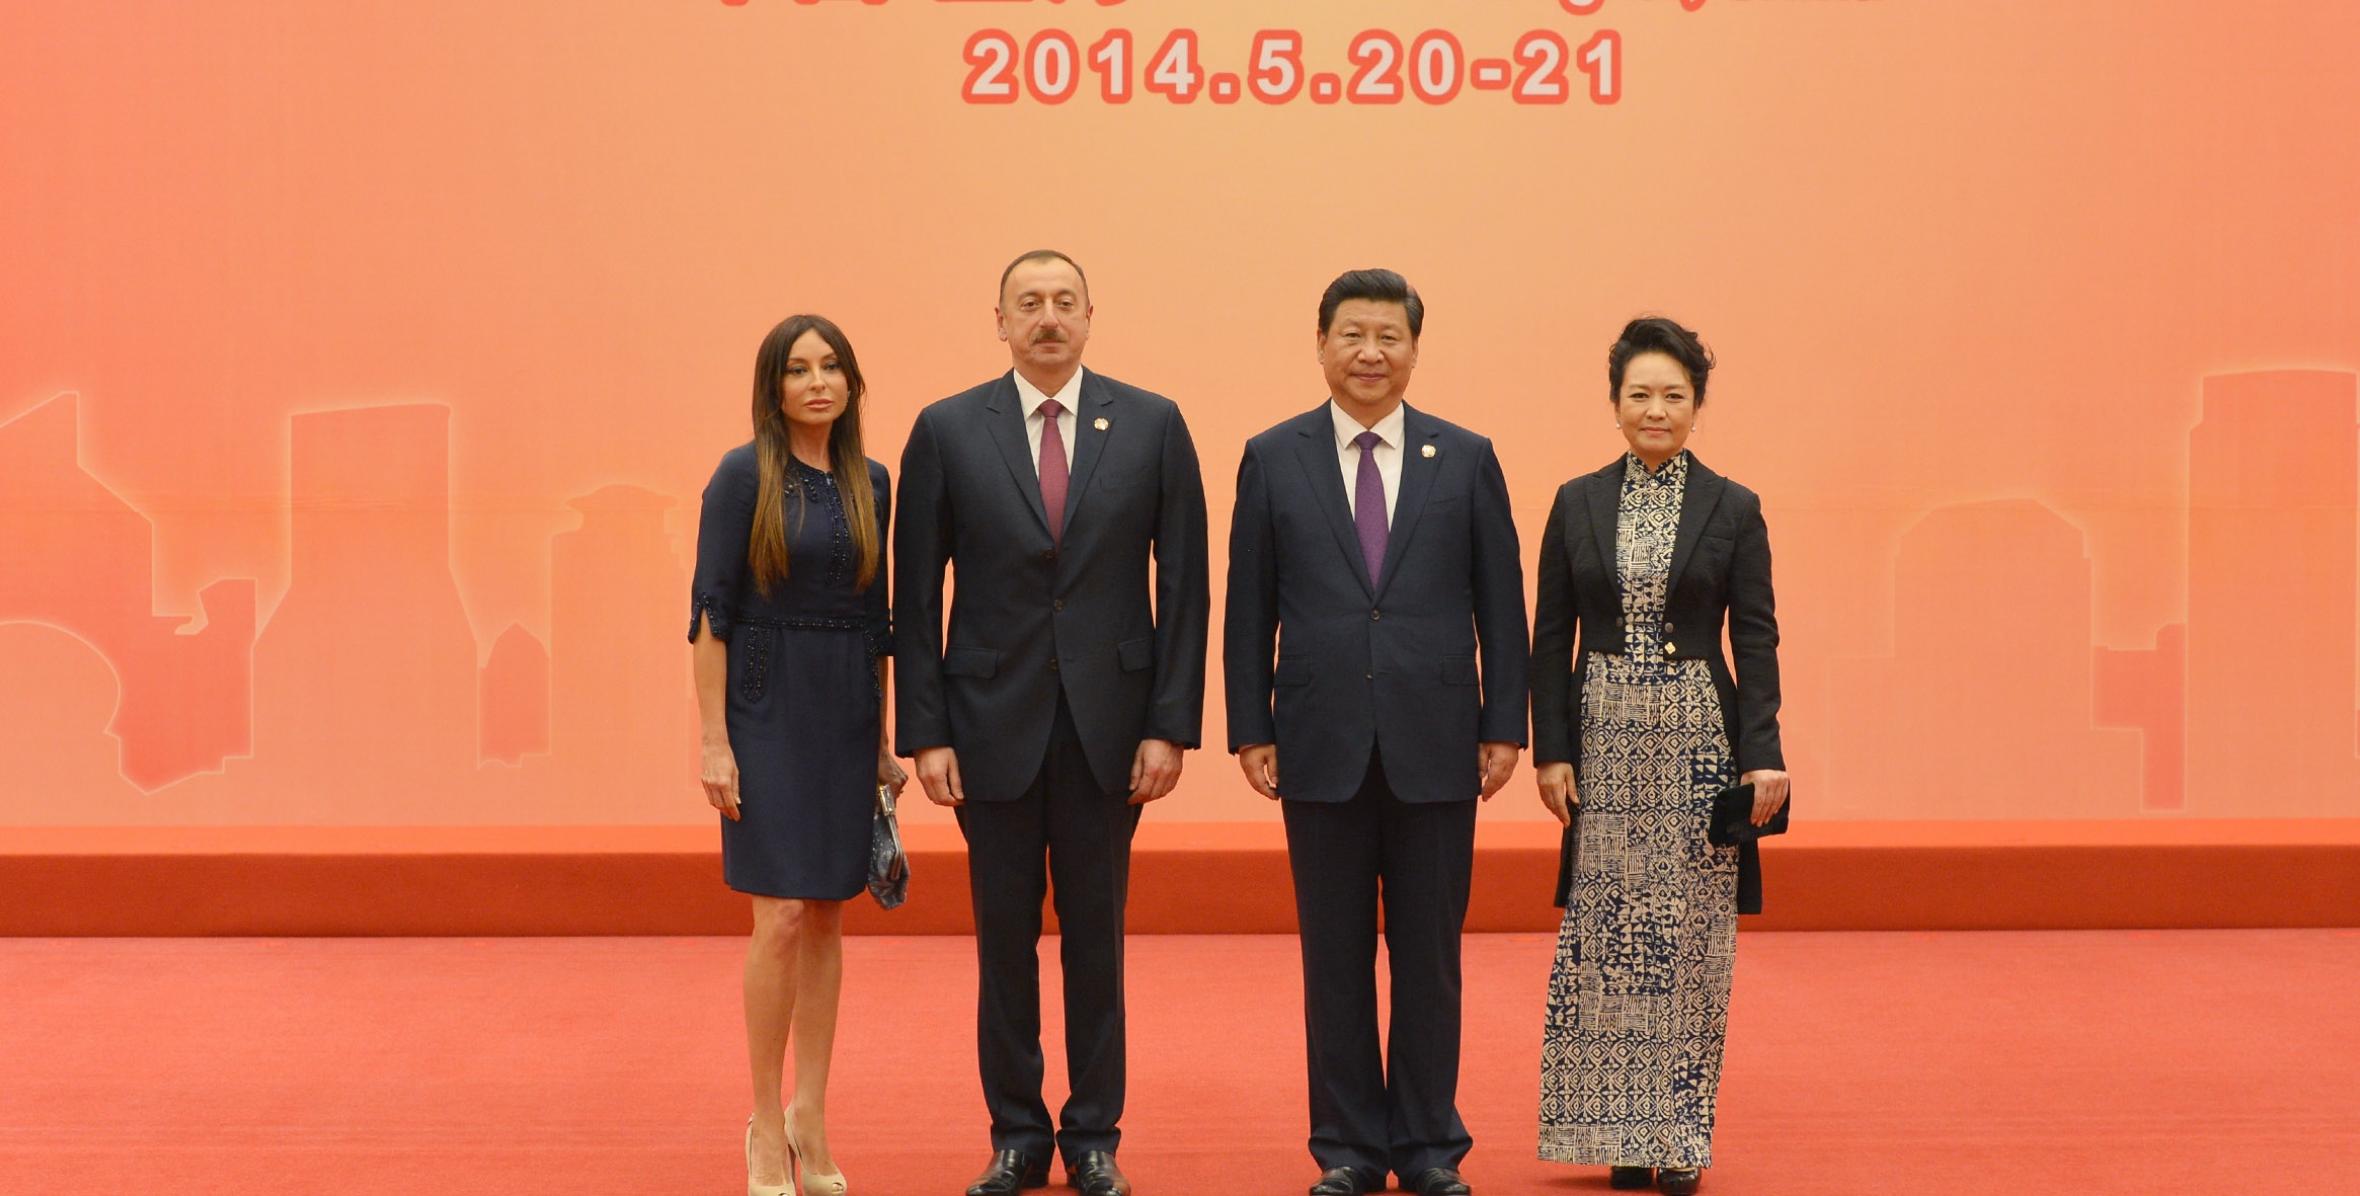 Ильхам Алиев принял участие в приеме, устроенном в Шанхае в честь глав государств и правительств